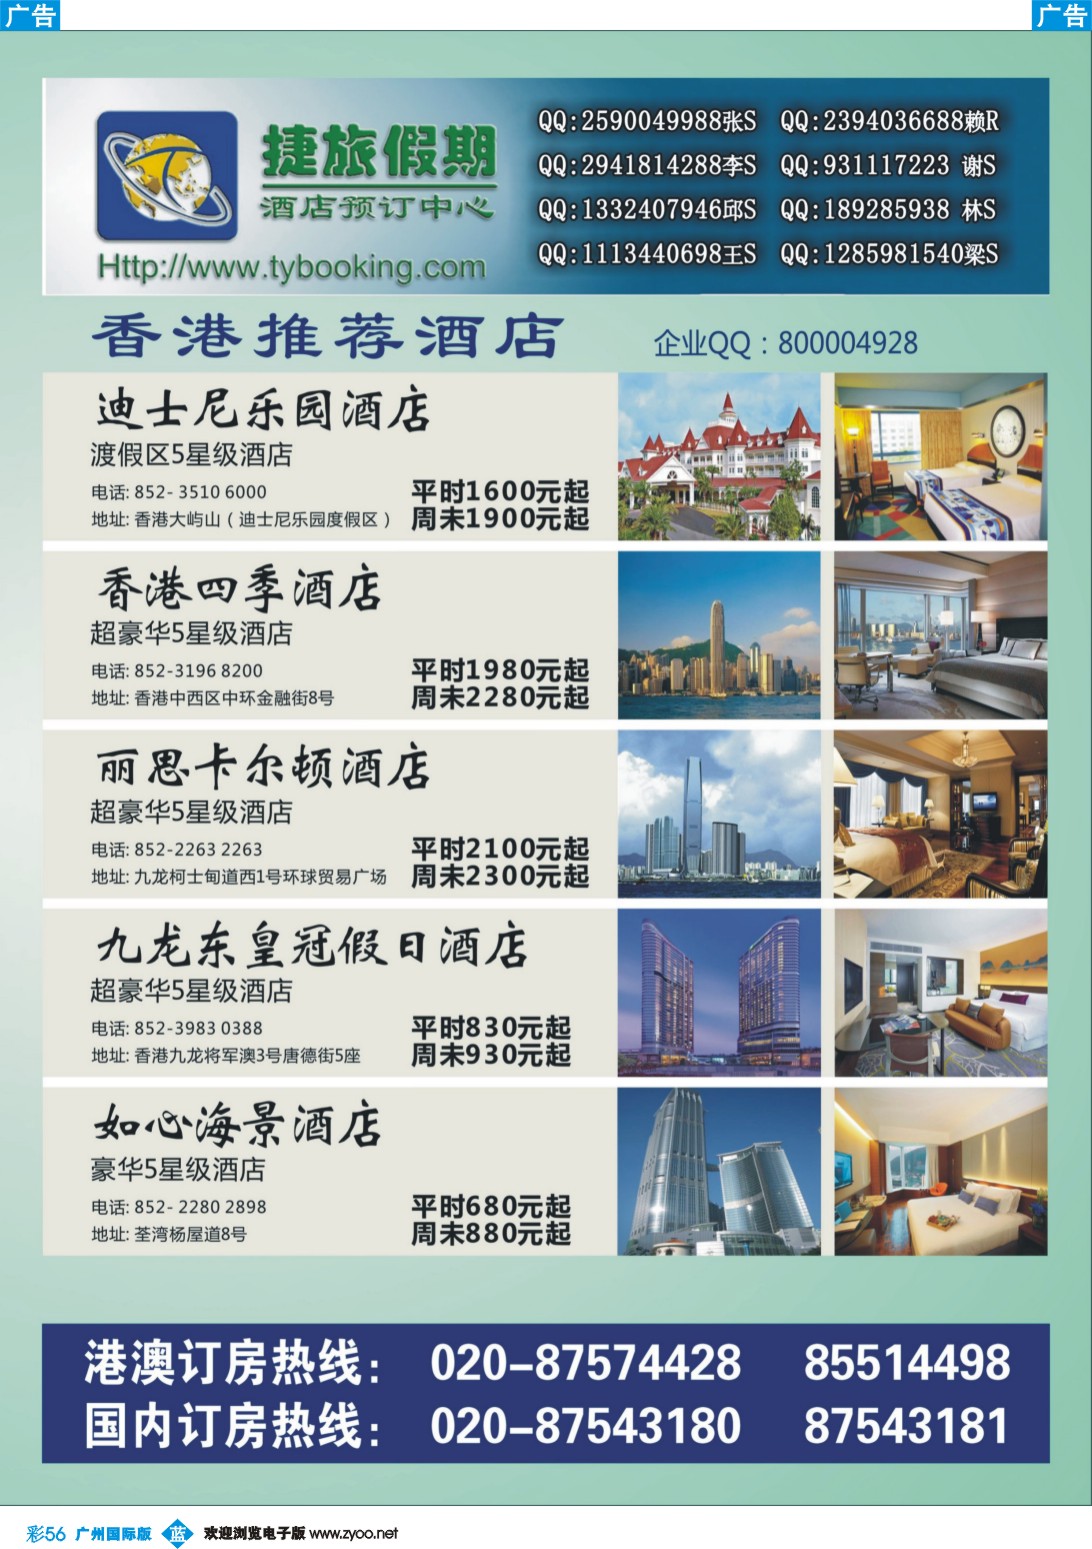 彩b056 捷旅假期--香港推荐酒店